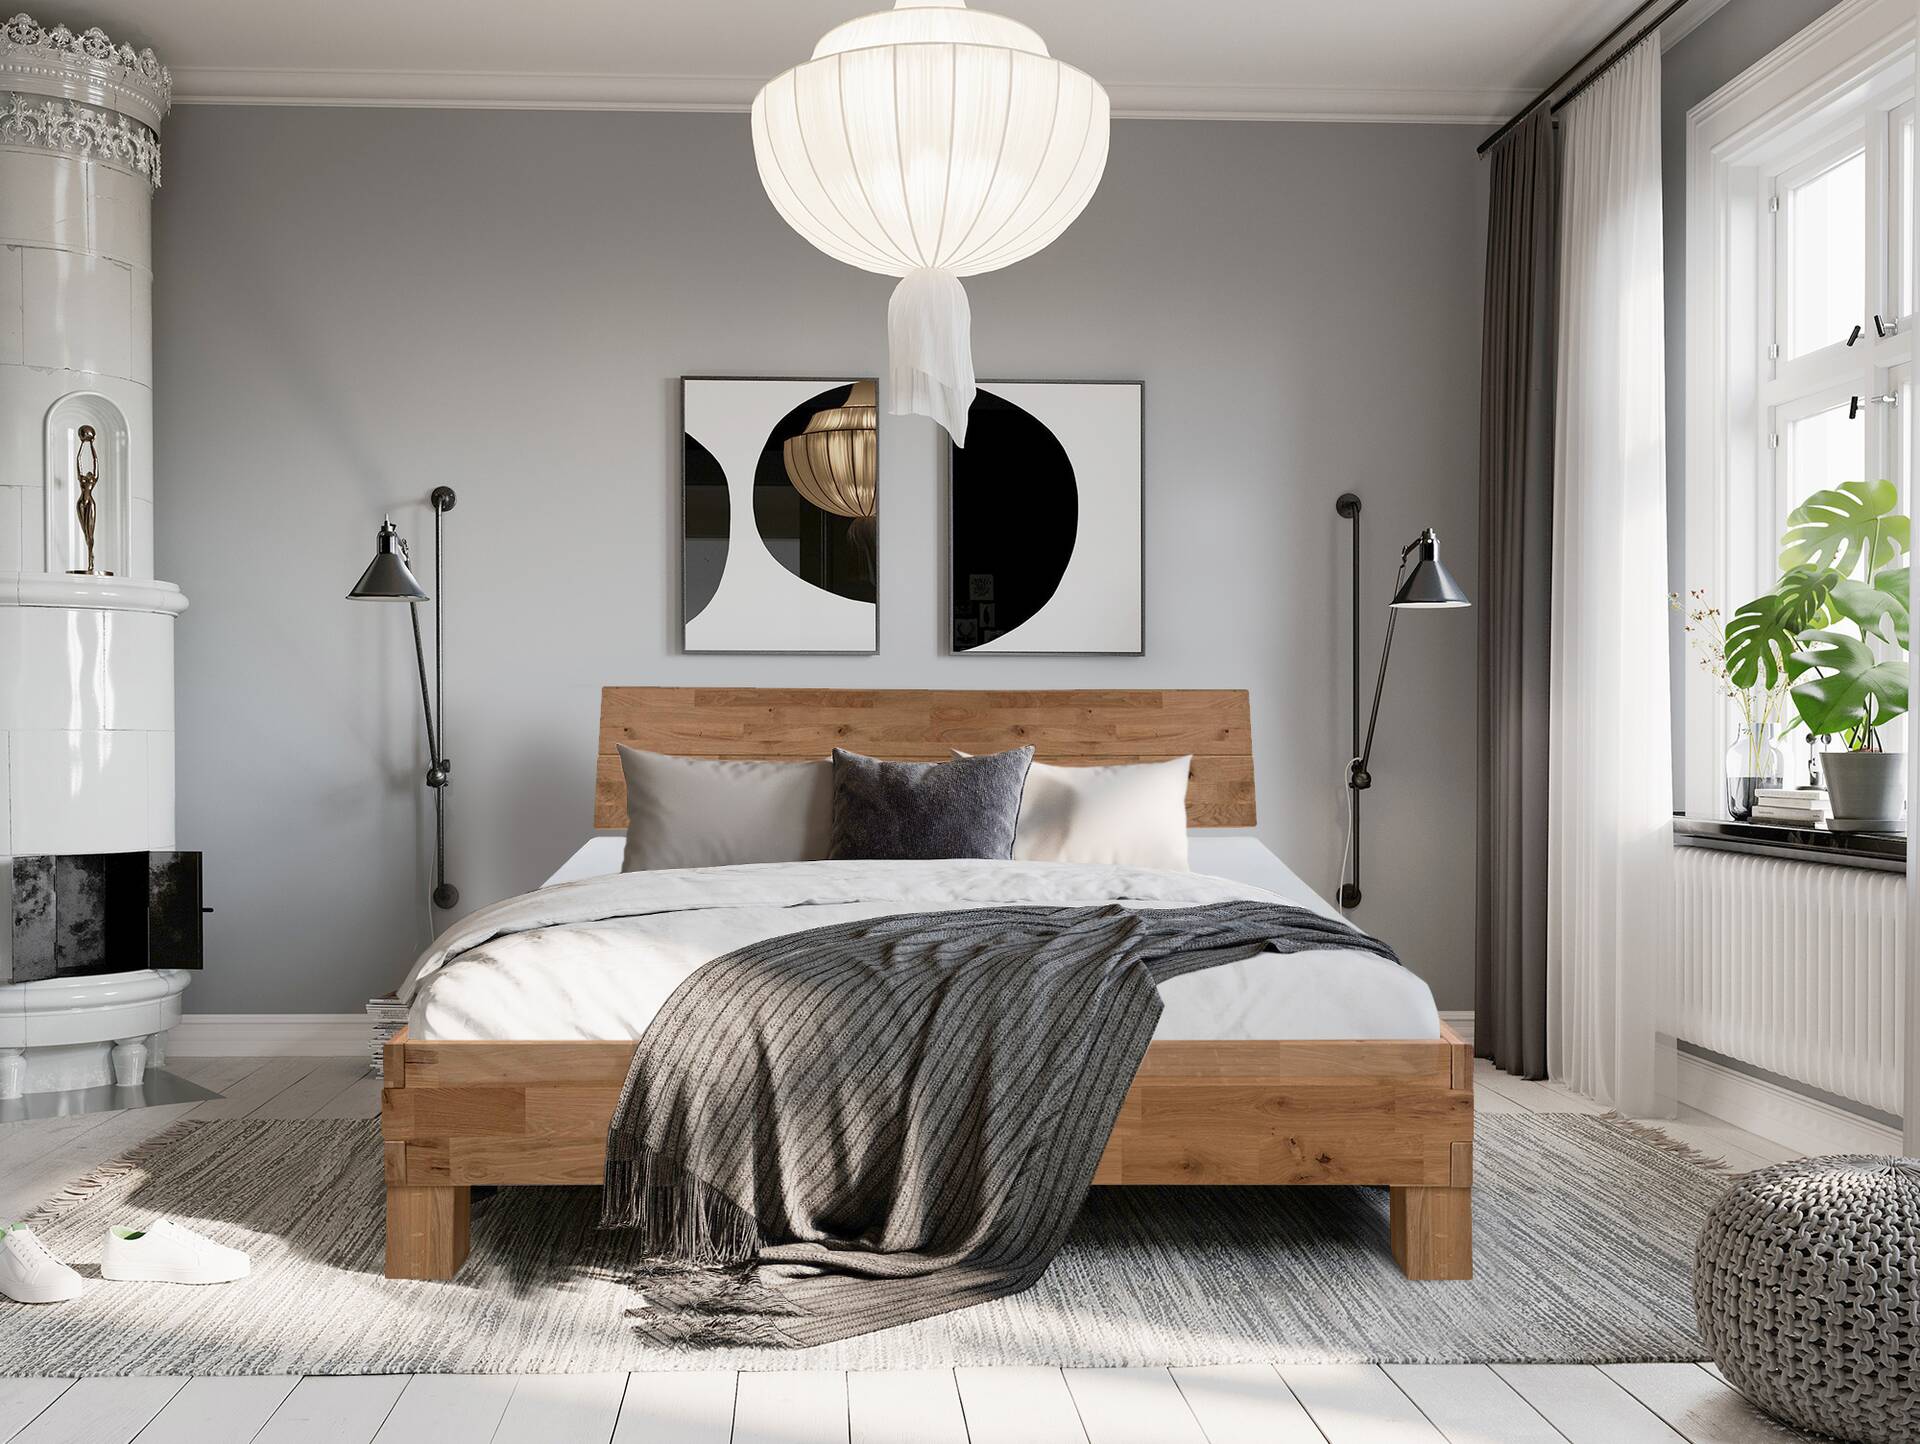 CORDINO 4-Fuß-Bett aus Eiche mit Kopfteil, Material Massivholz 200 x 200 cm | Eiche unbehandelt | gehackt